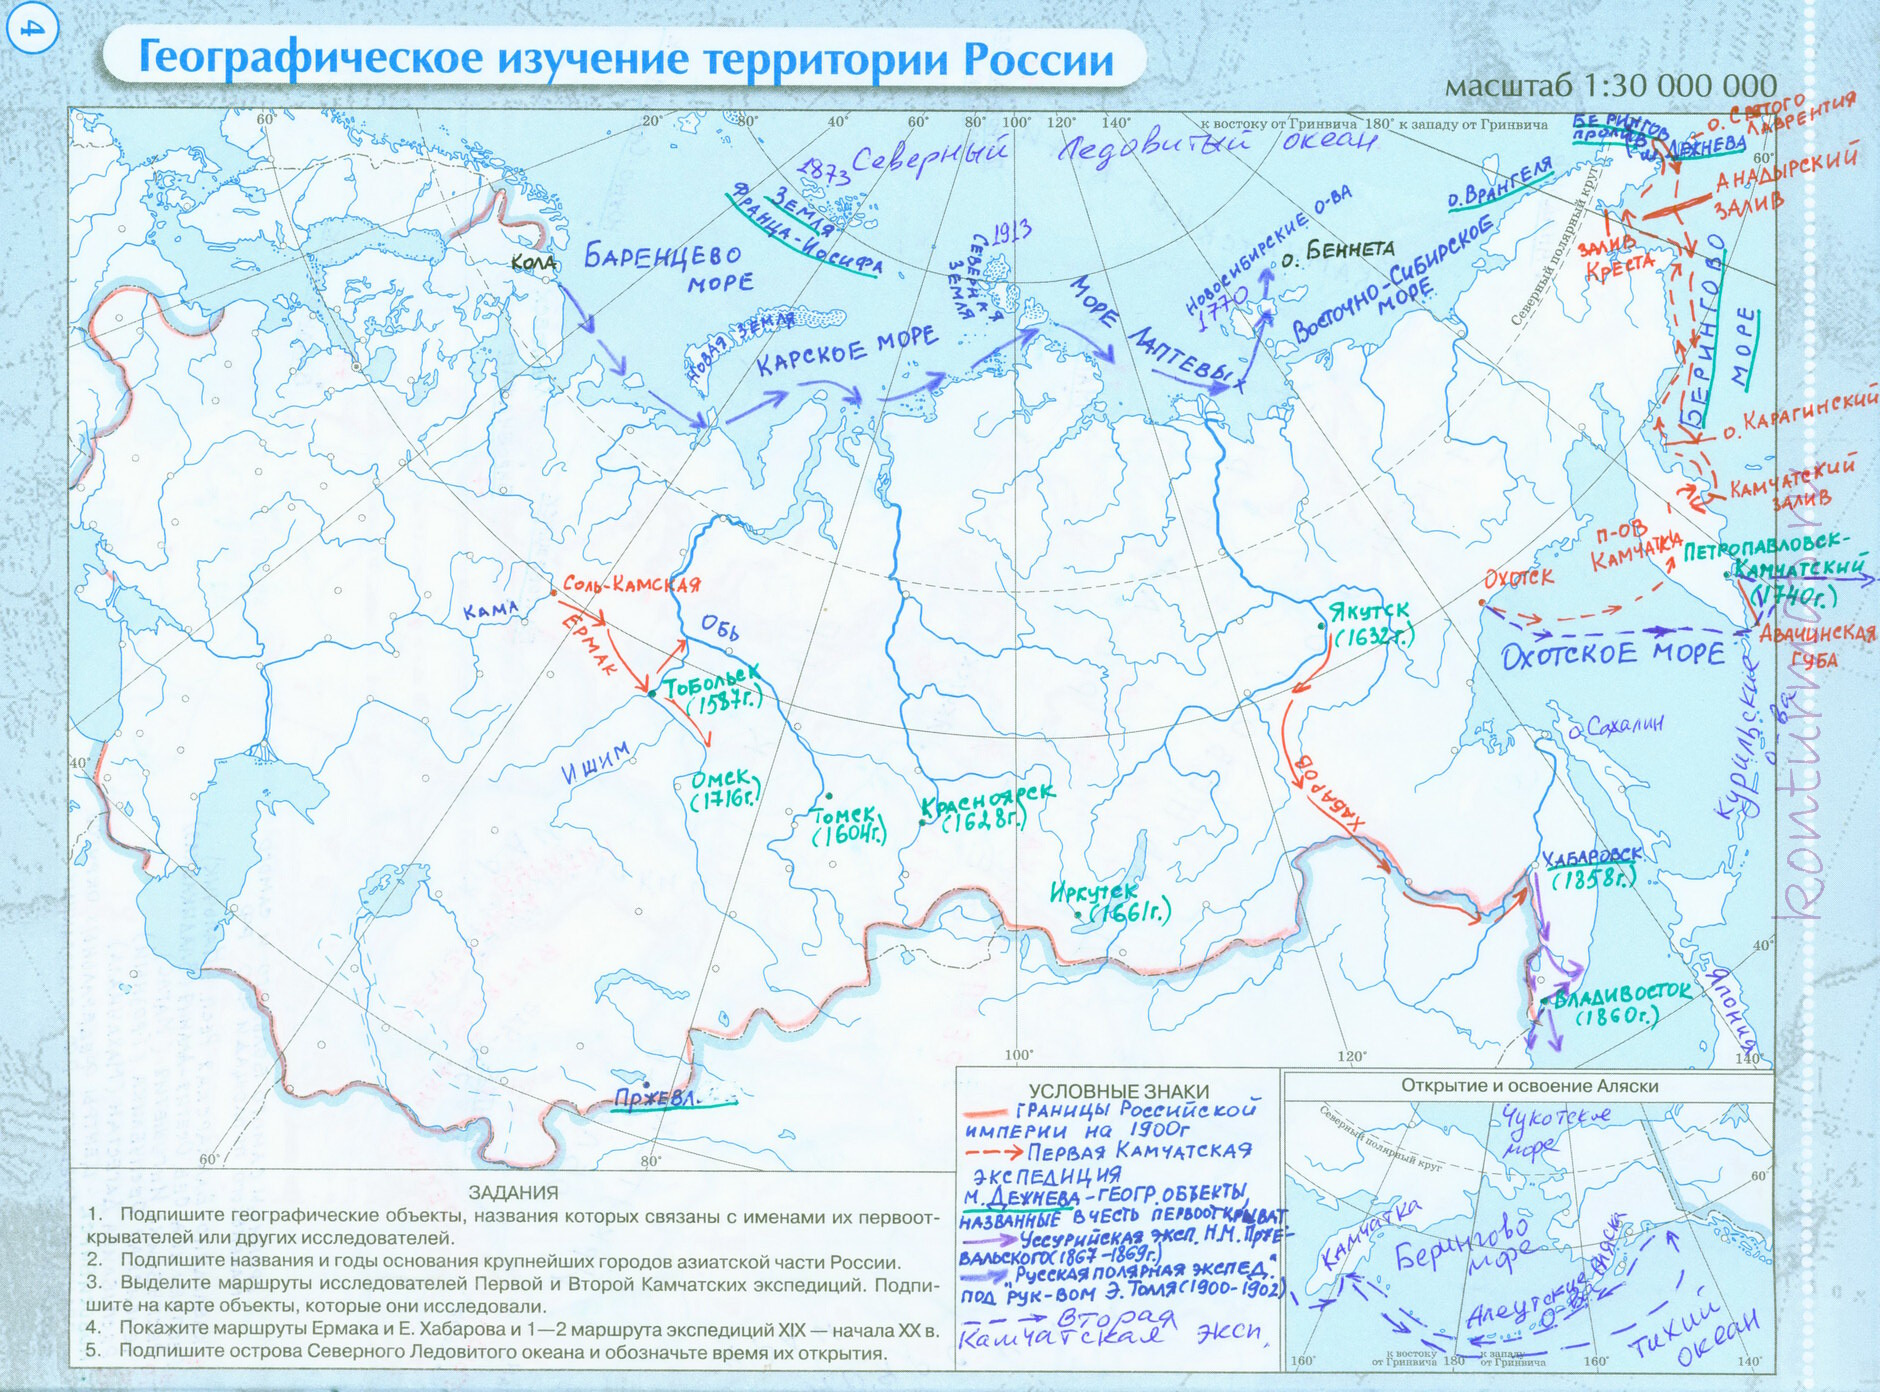 Физическая карта ленинградской области рельеф